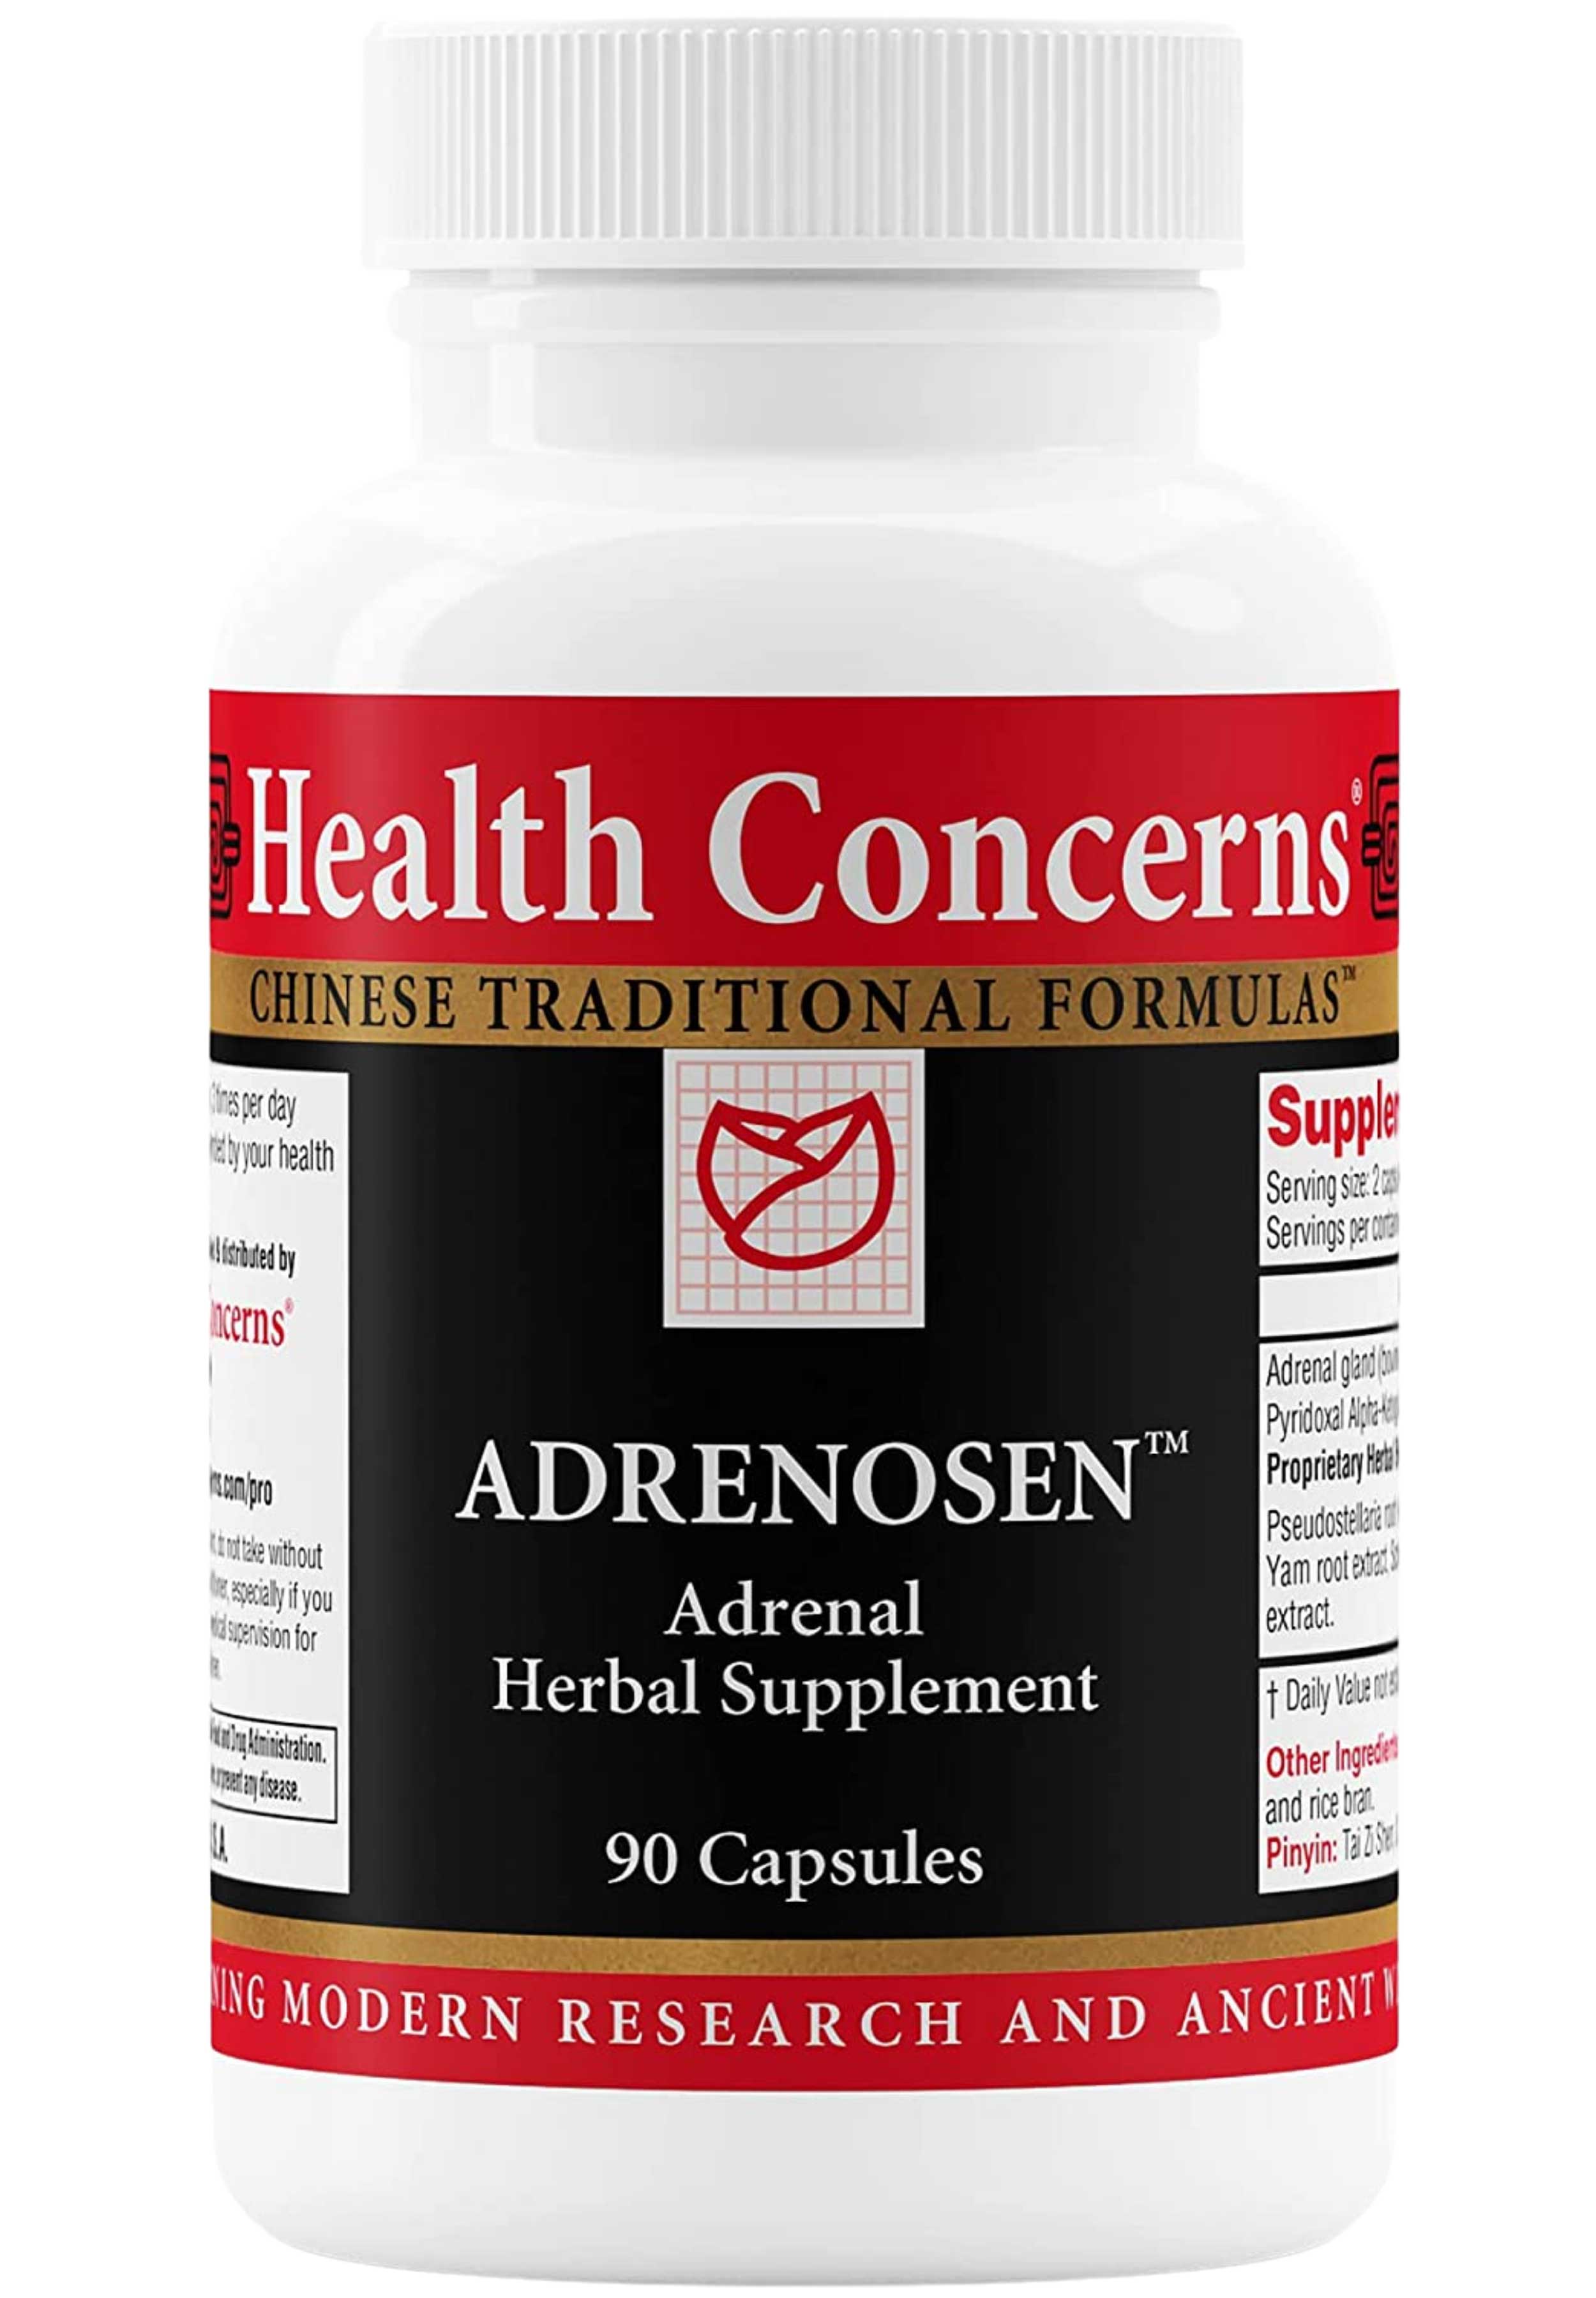 Health Concerns Adrenosen